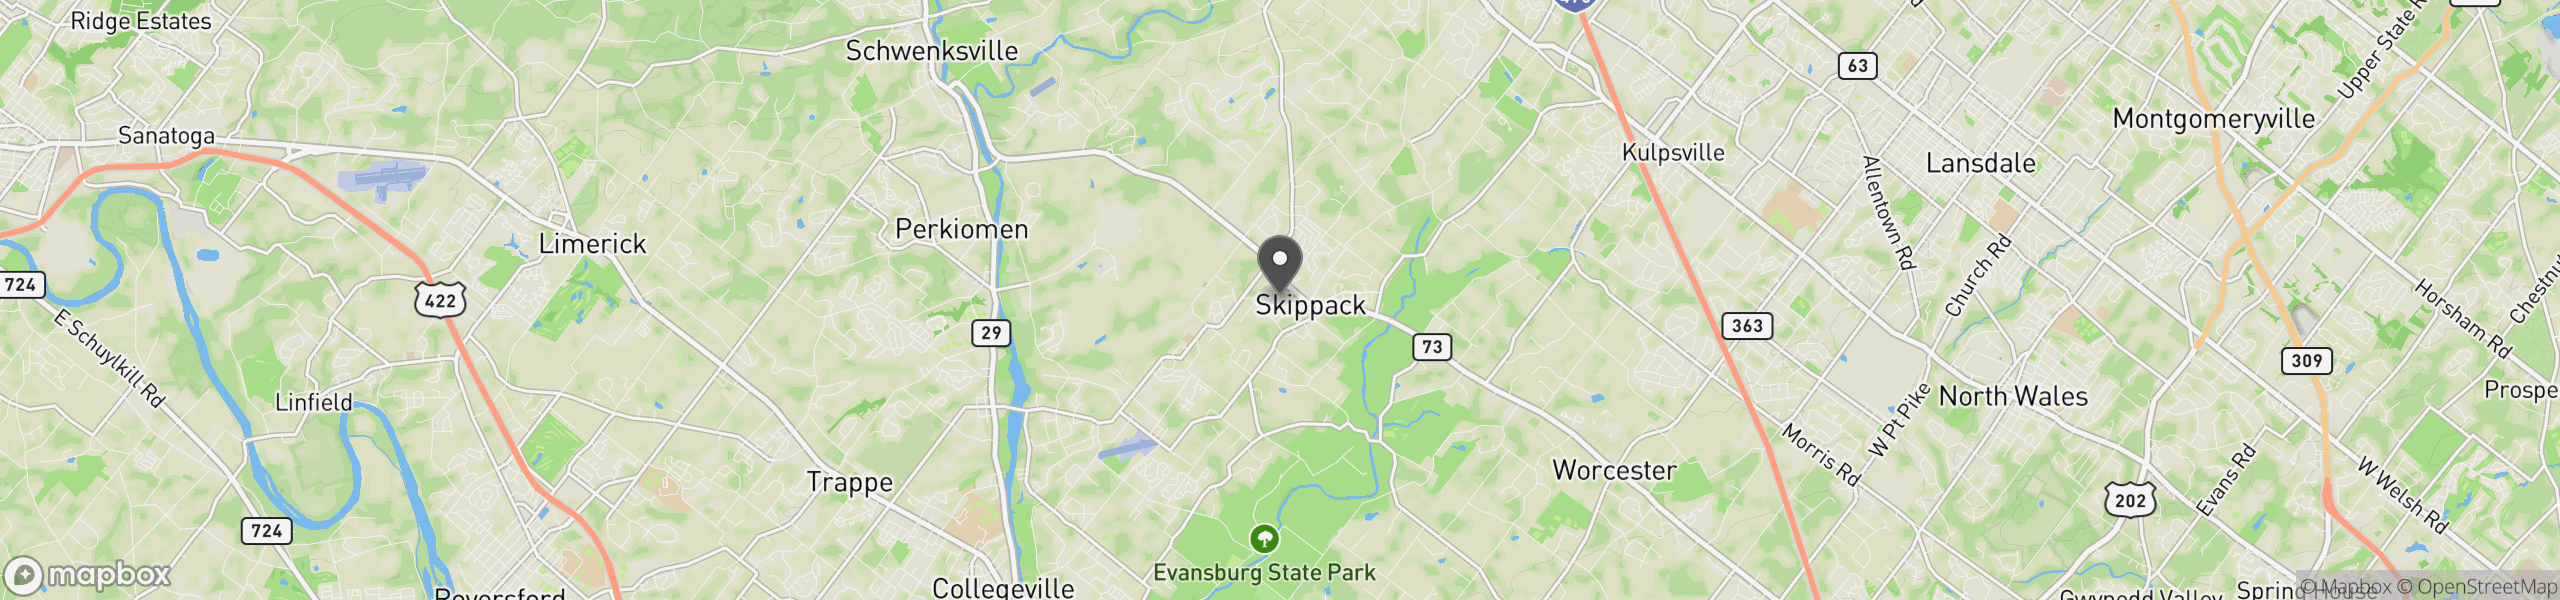 Skippack, PA